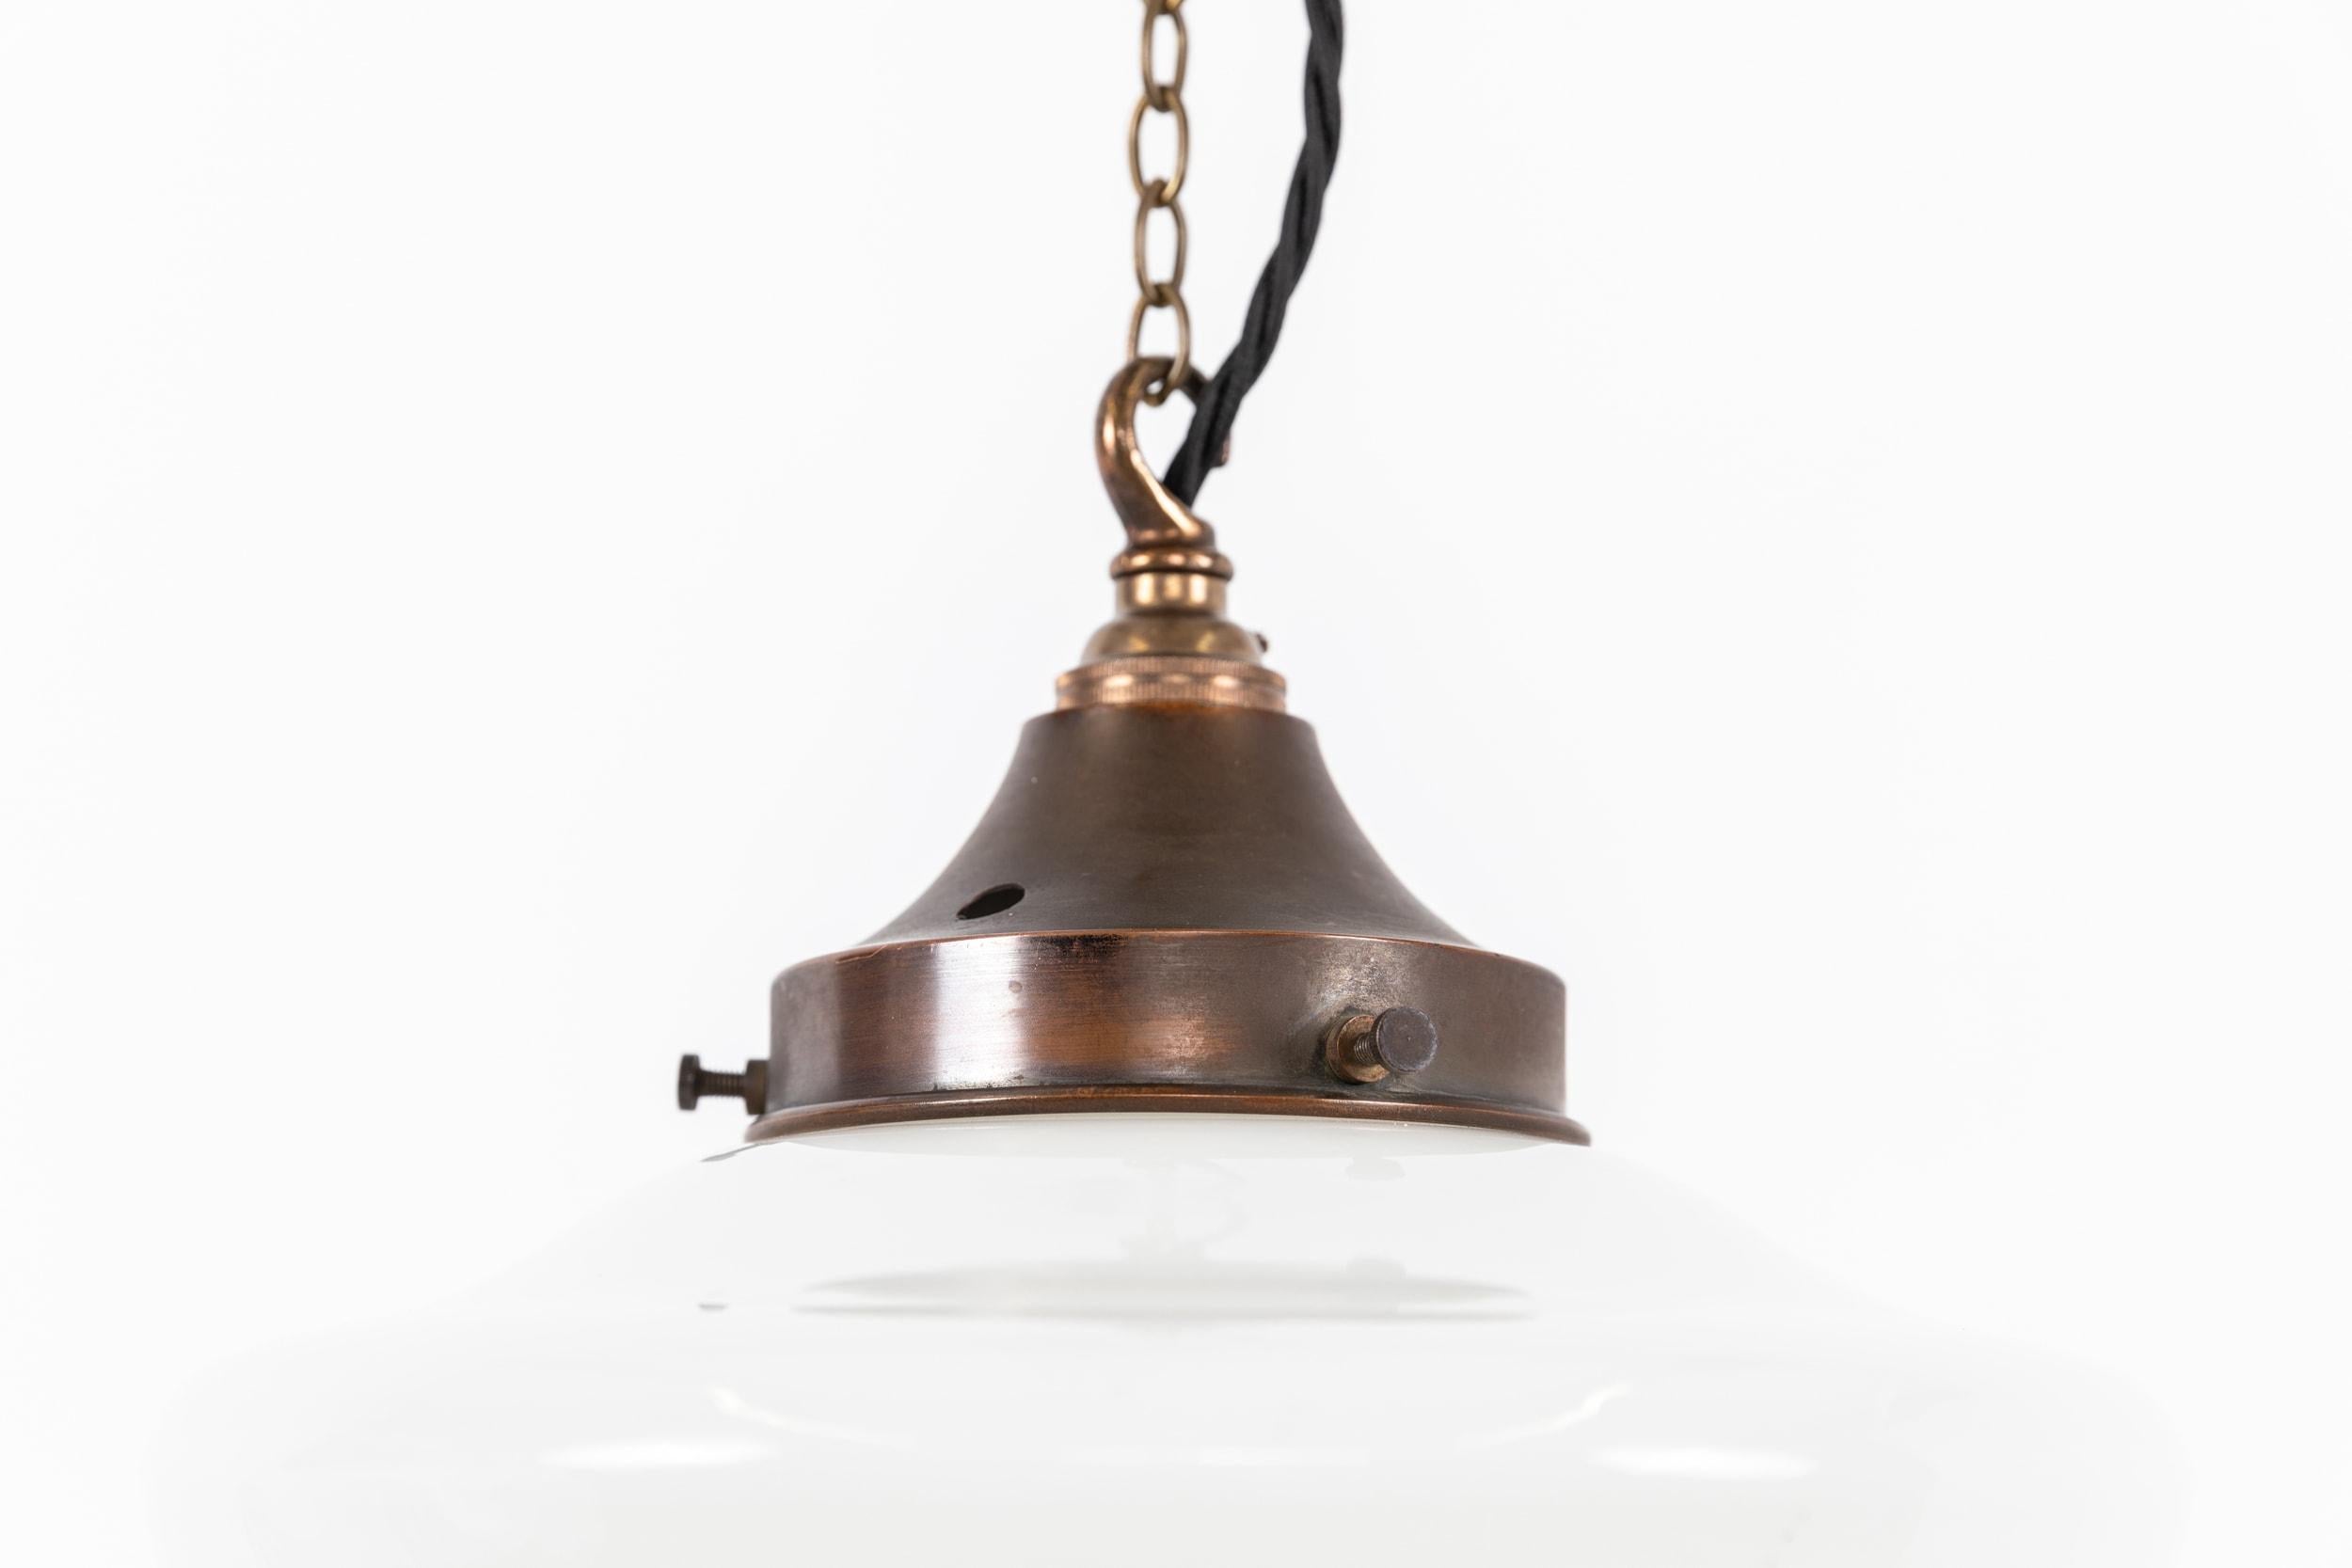 Magnifique lampe suspendue en verre opalin pressé avec galerie en laiton. C.C.1920.

Abat-jour en verre opalin moulé, ce type de lampe se trouvait souvent dans les églises et les chapelles du pays. 

Recâblé avec 1m de câble torsadé noir.
